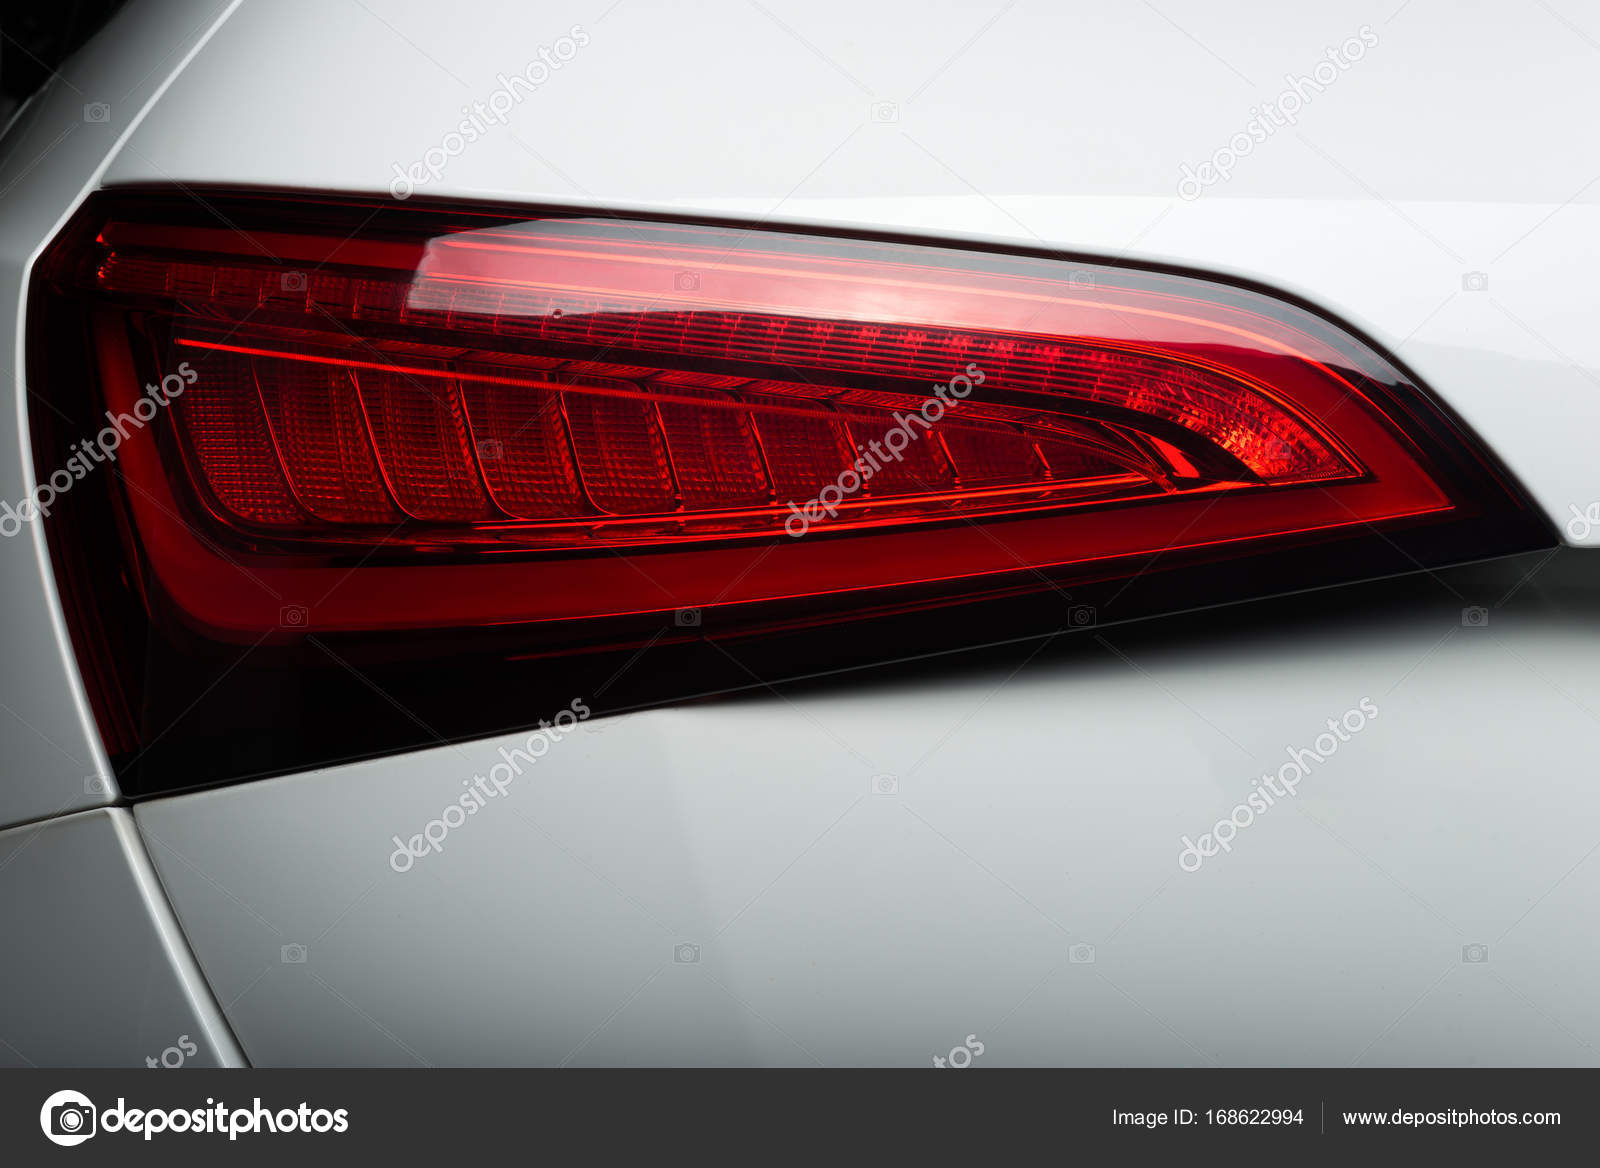 Auto: Rücklicht eines weißen Autos beschädigt - Stockfotografie:  lizenzfreie Fotos © kunksy.gmail.com 168622994